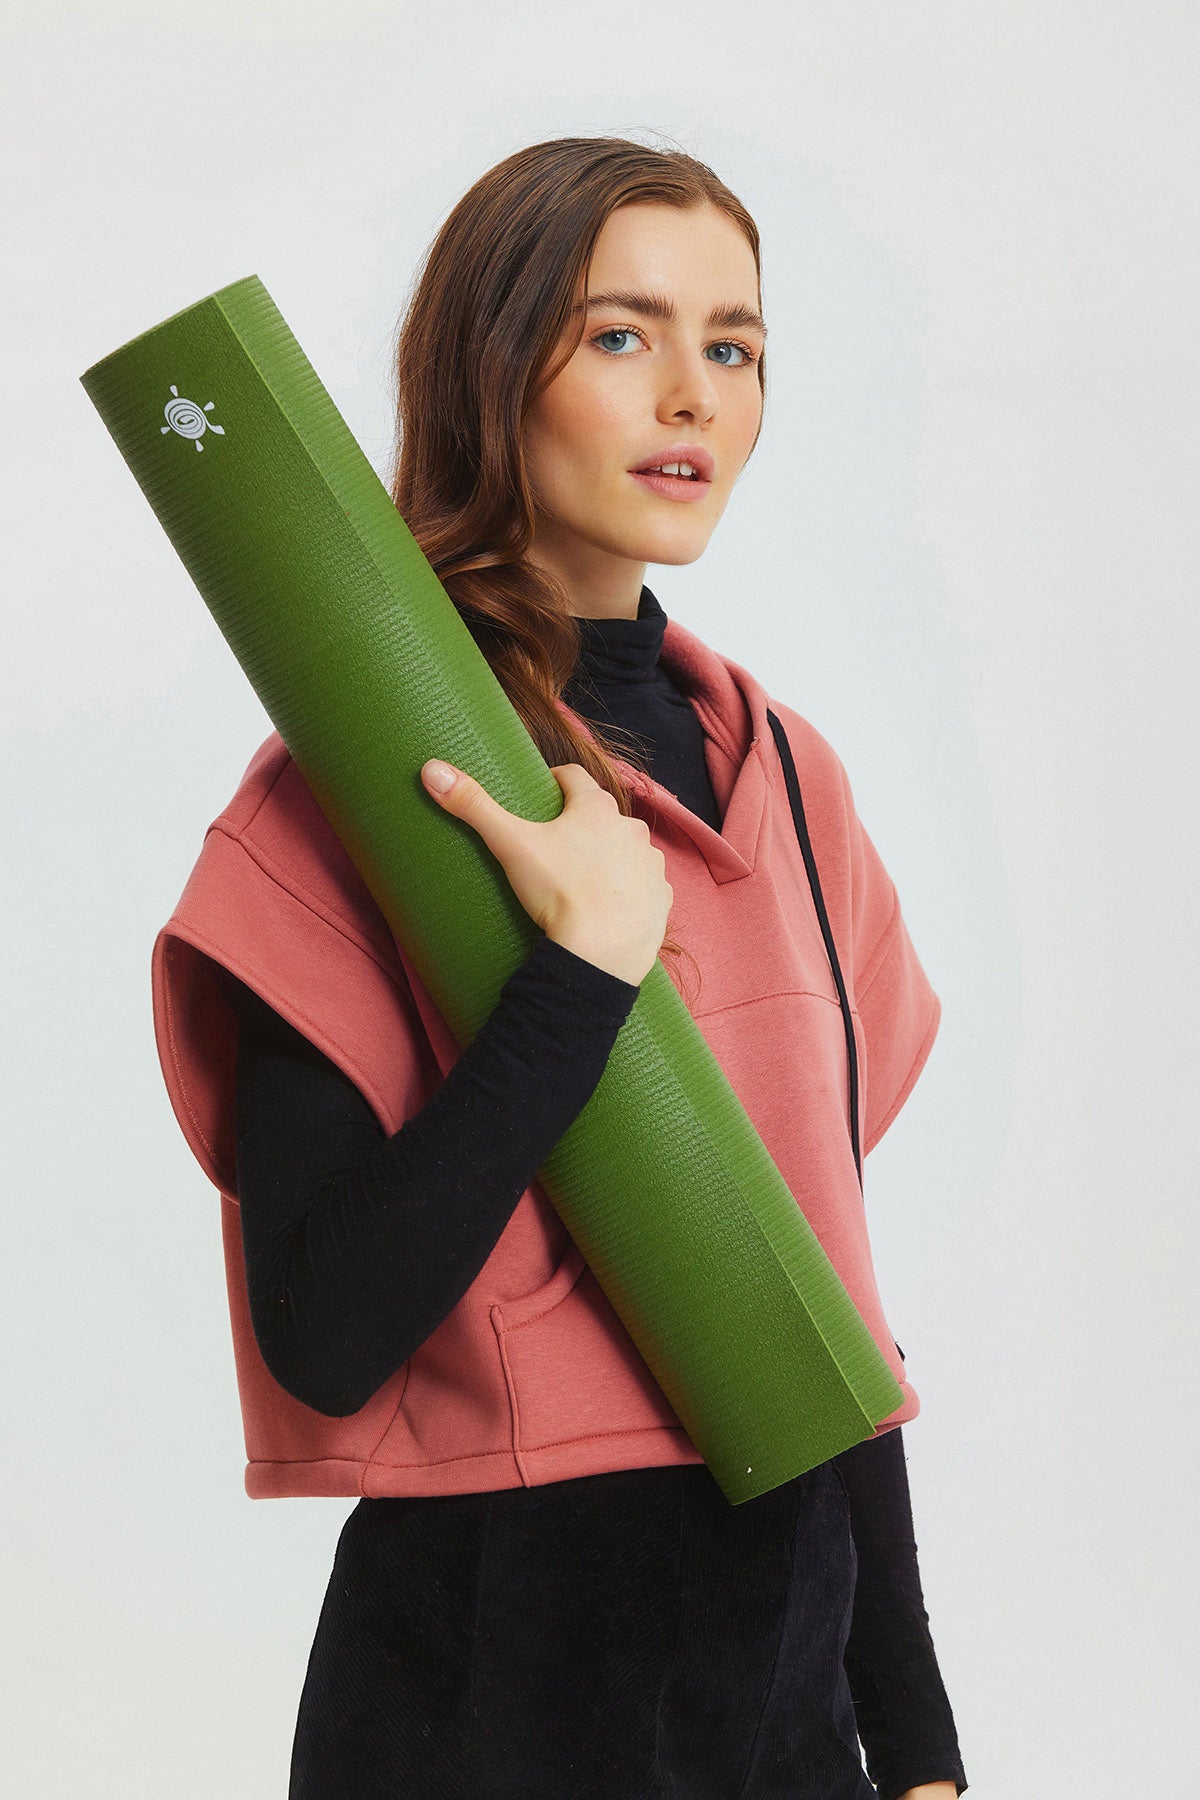 Kurma Lite 4.2 mm Yoga Matı Yeşil